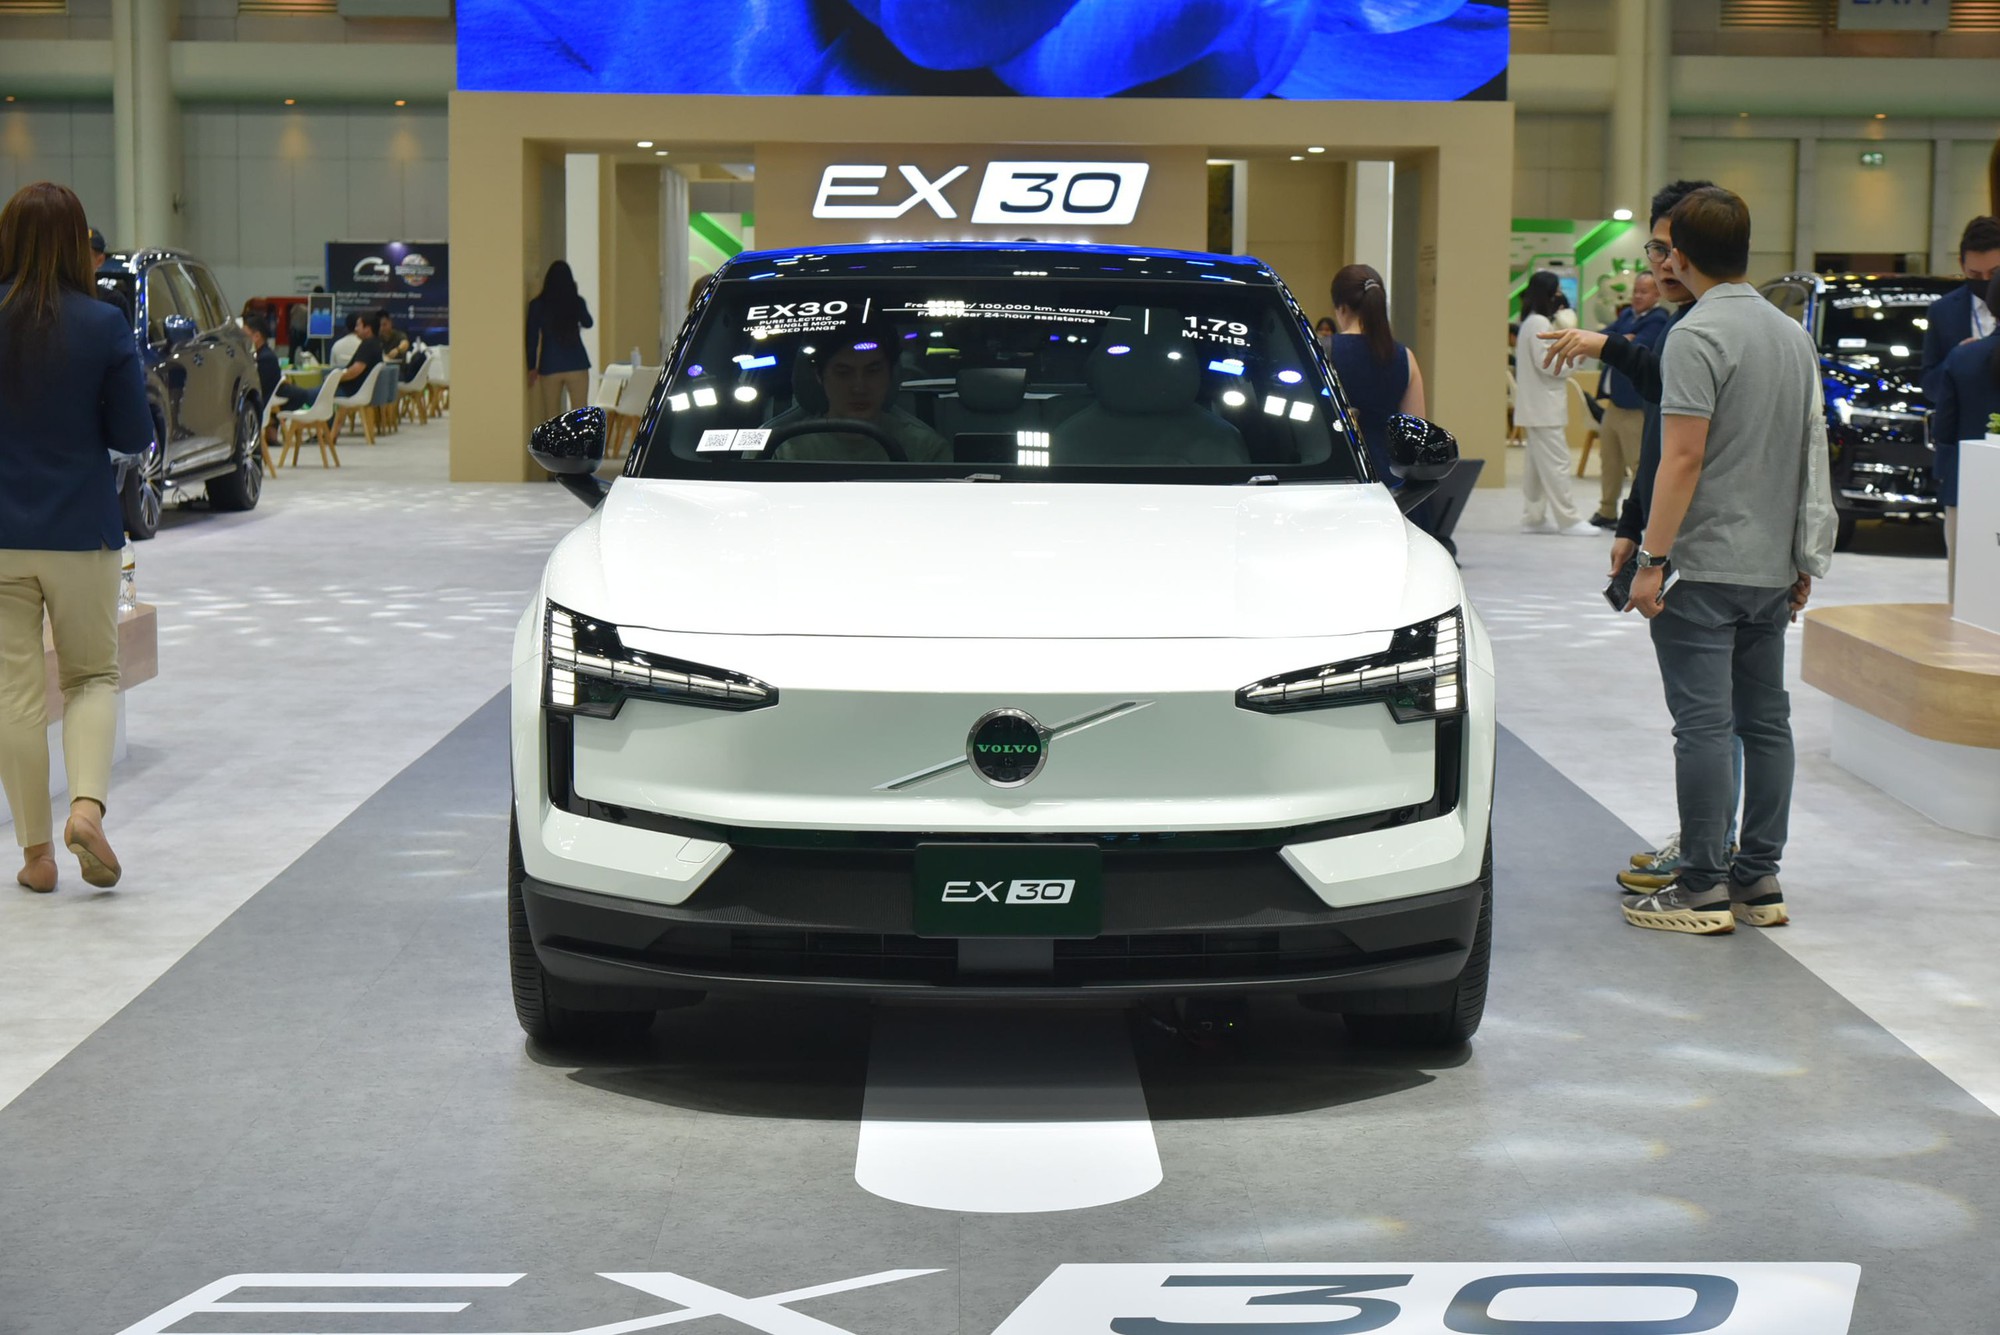 Xem trước Volvo EX30 tại BIMS trước khi về Việt Nam: Giá quy đổi hơn 1 tỷ, nhỏ, chật, mạnh, nhiều công nghệ - Ảnh 7.